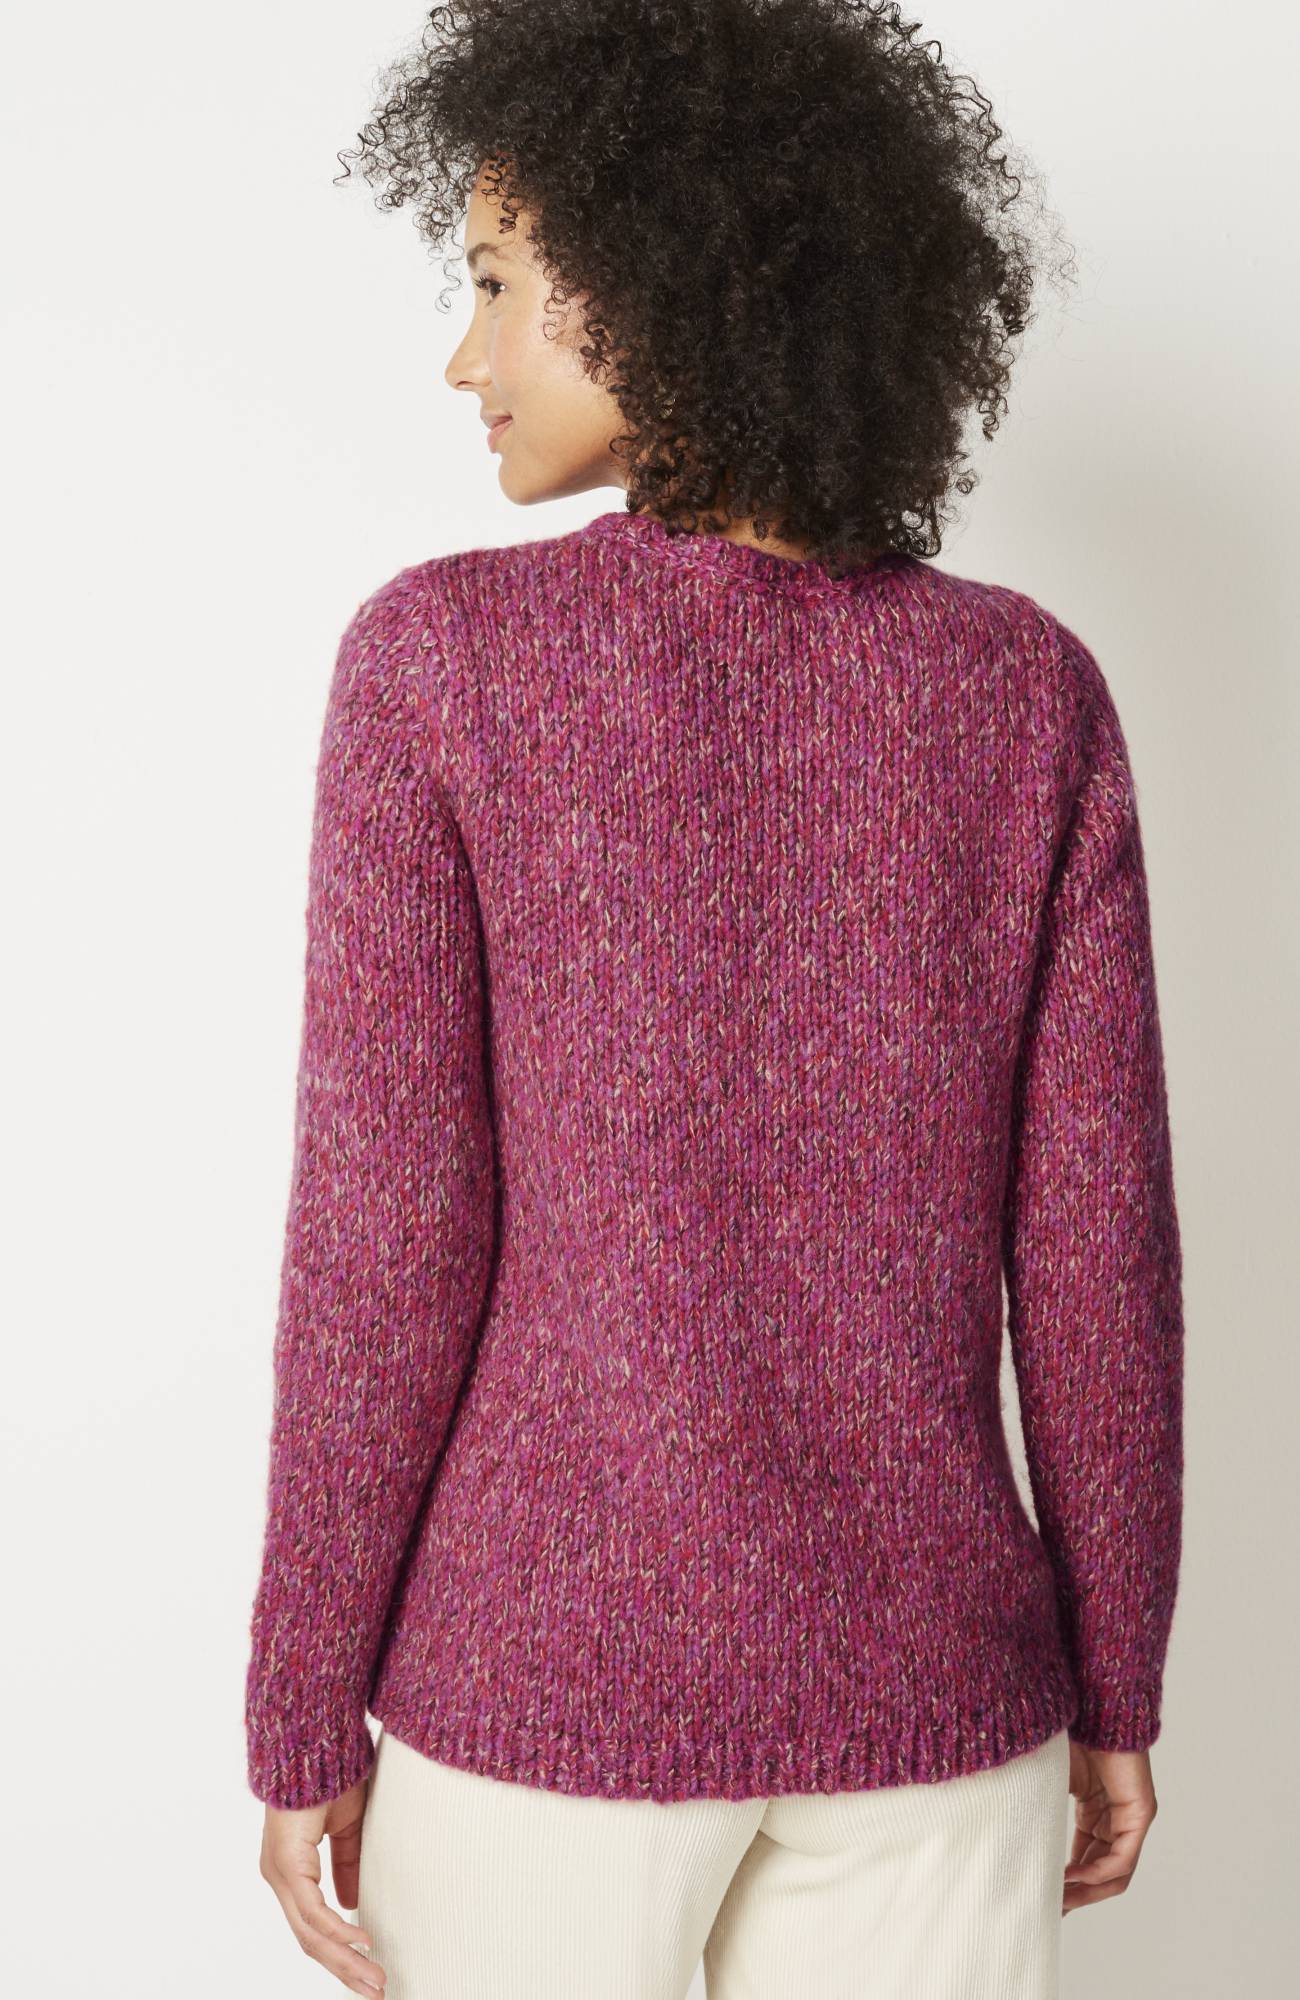 Multicolored Chevron Sweater